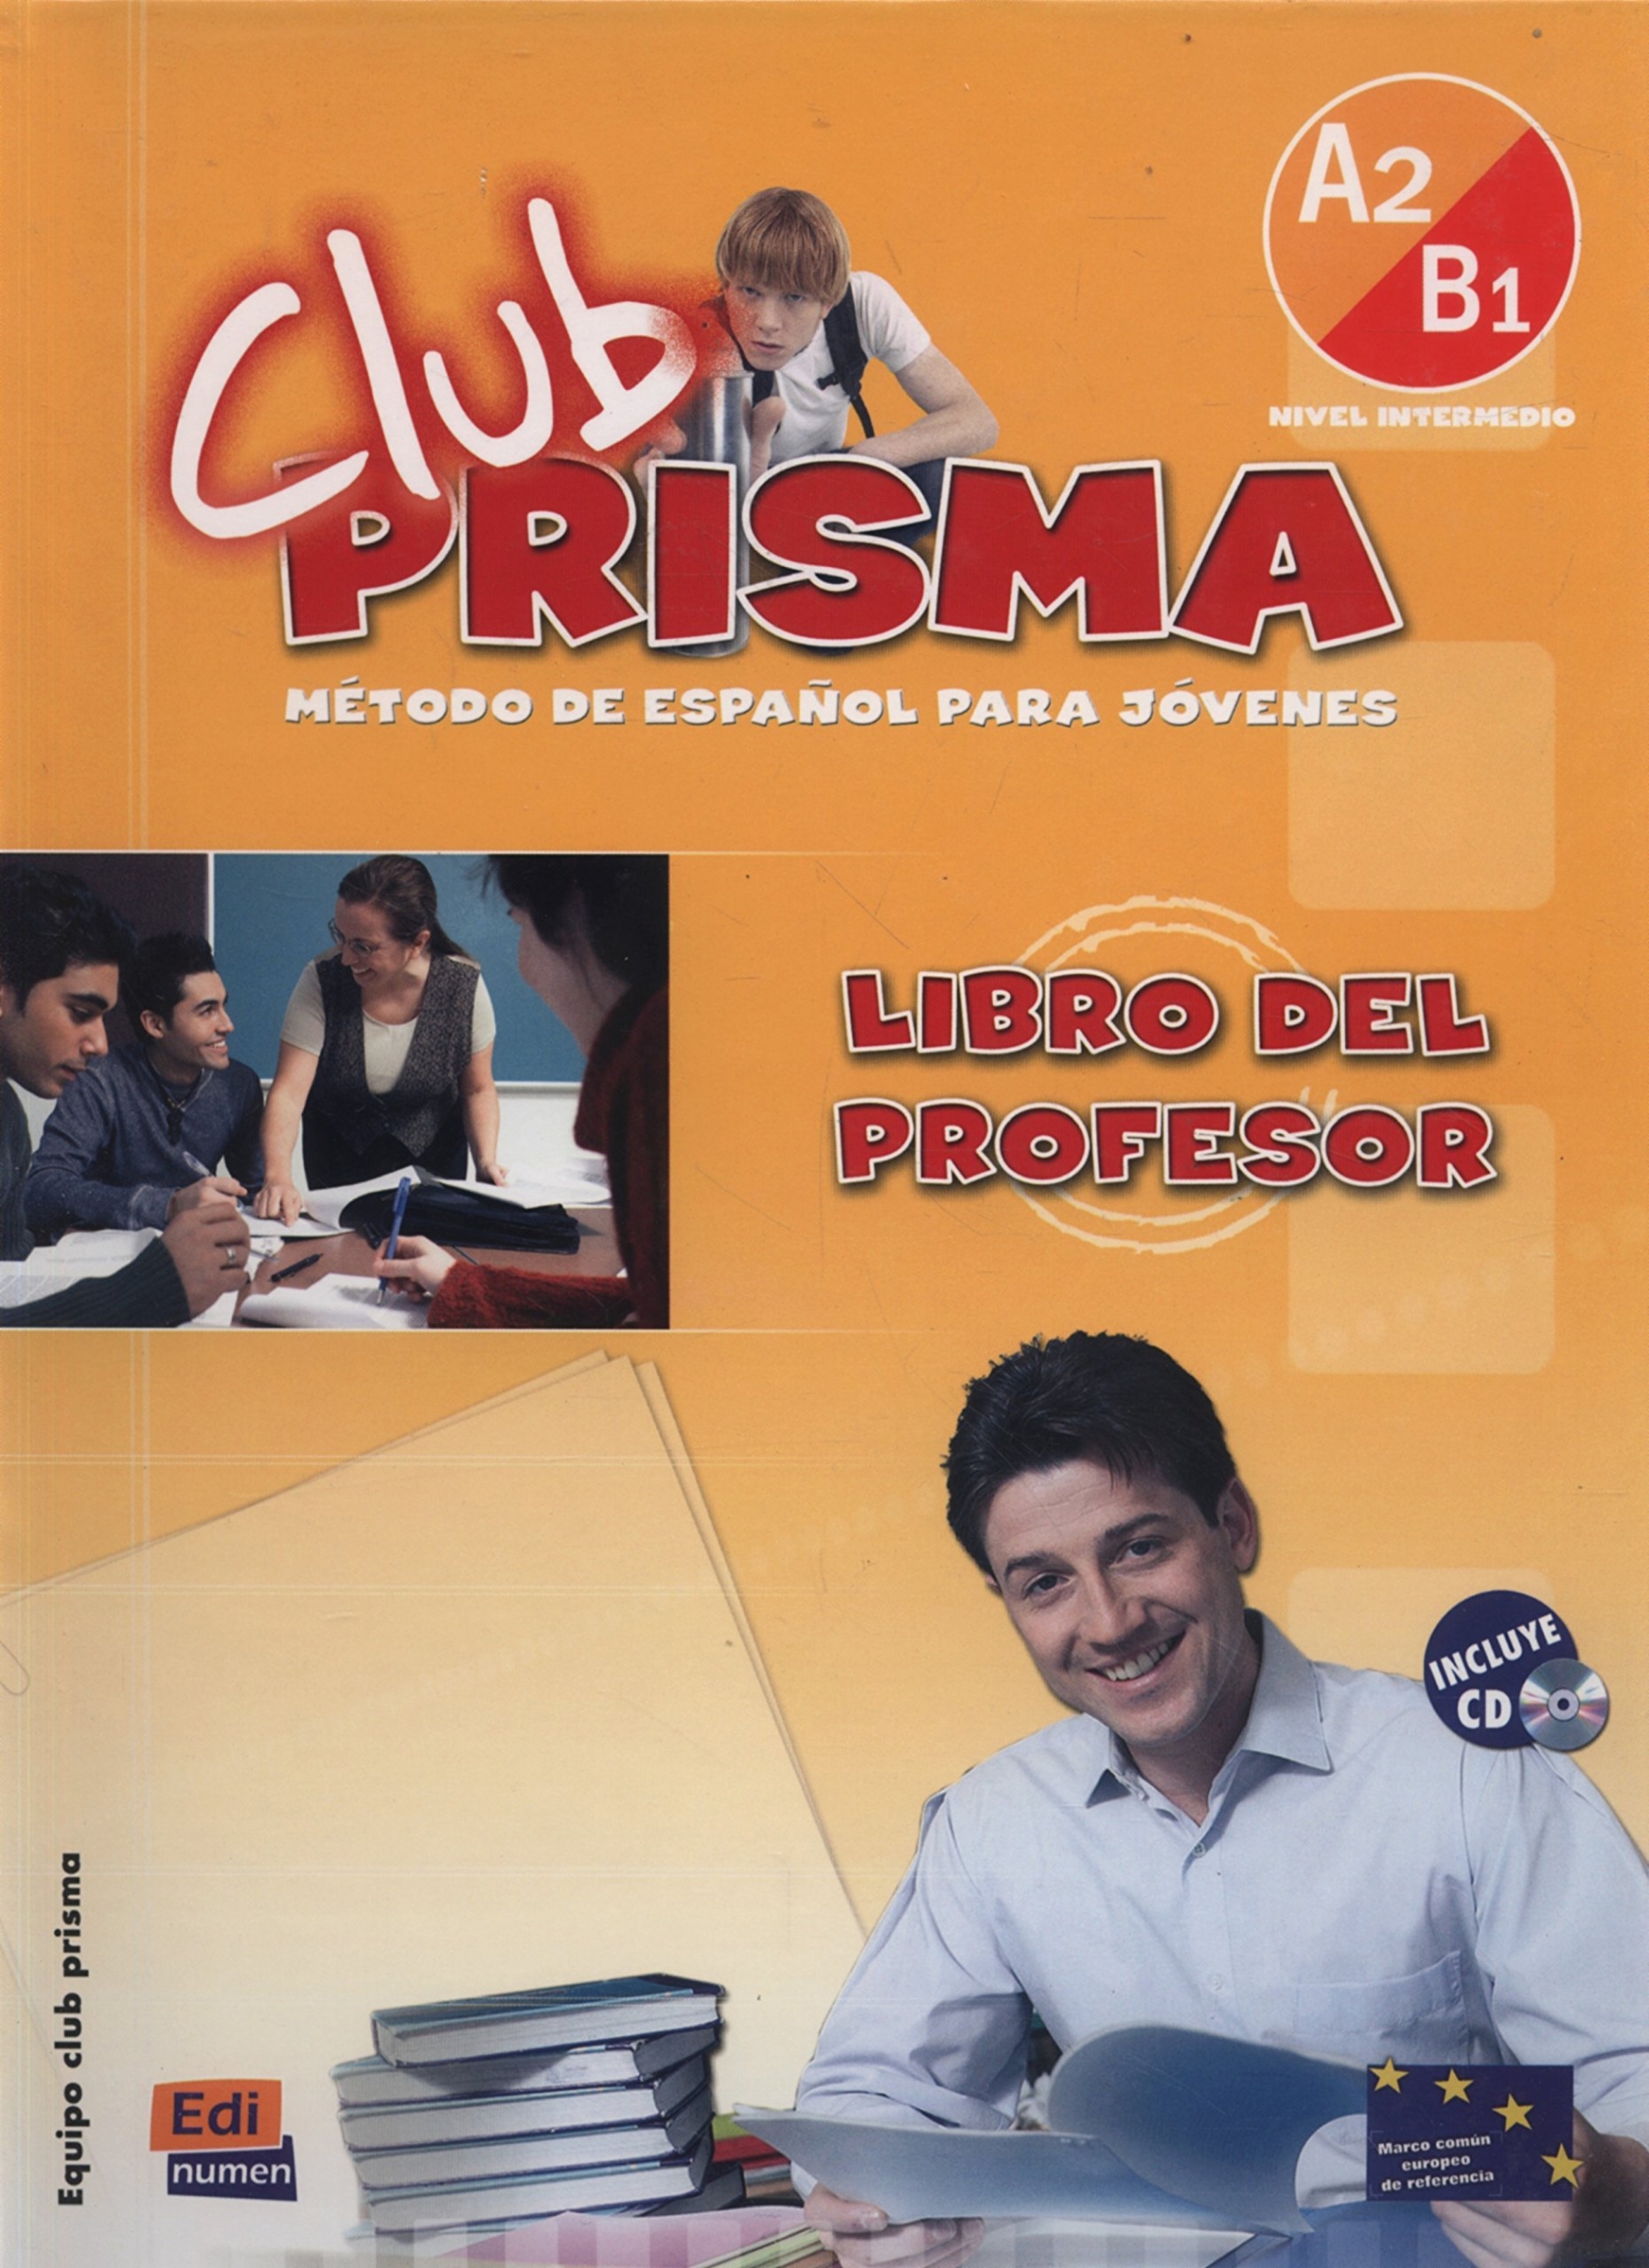 Координатор проекта: Maria Jose Gelabert Club Prisma Nivel A2/ B1 - Libro del profesor + CD de audiciones 